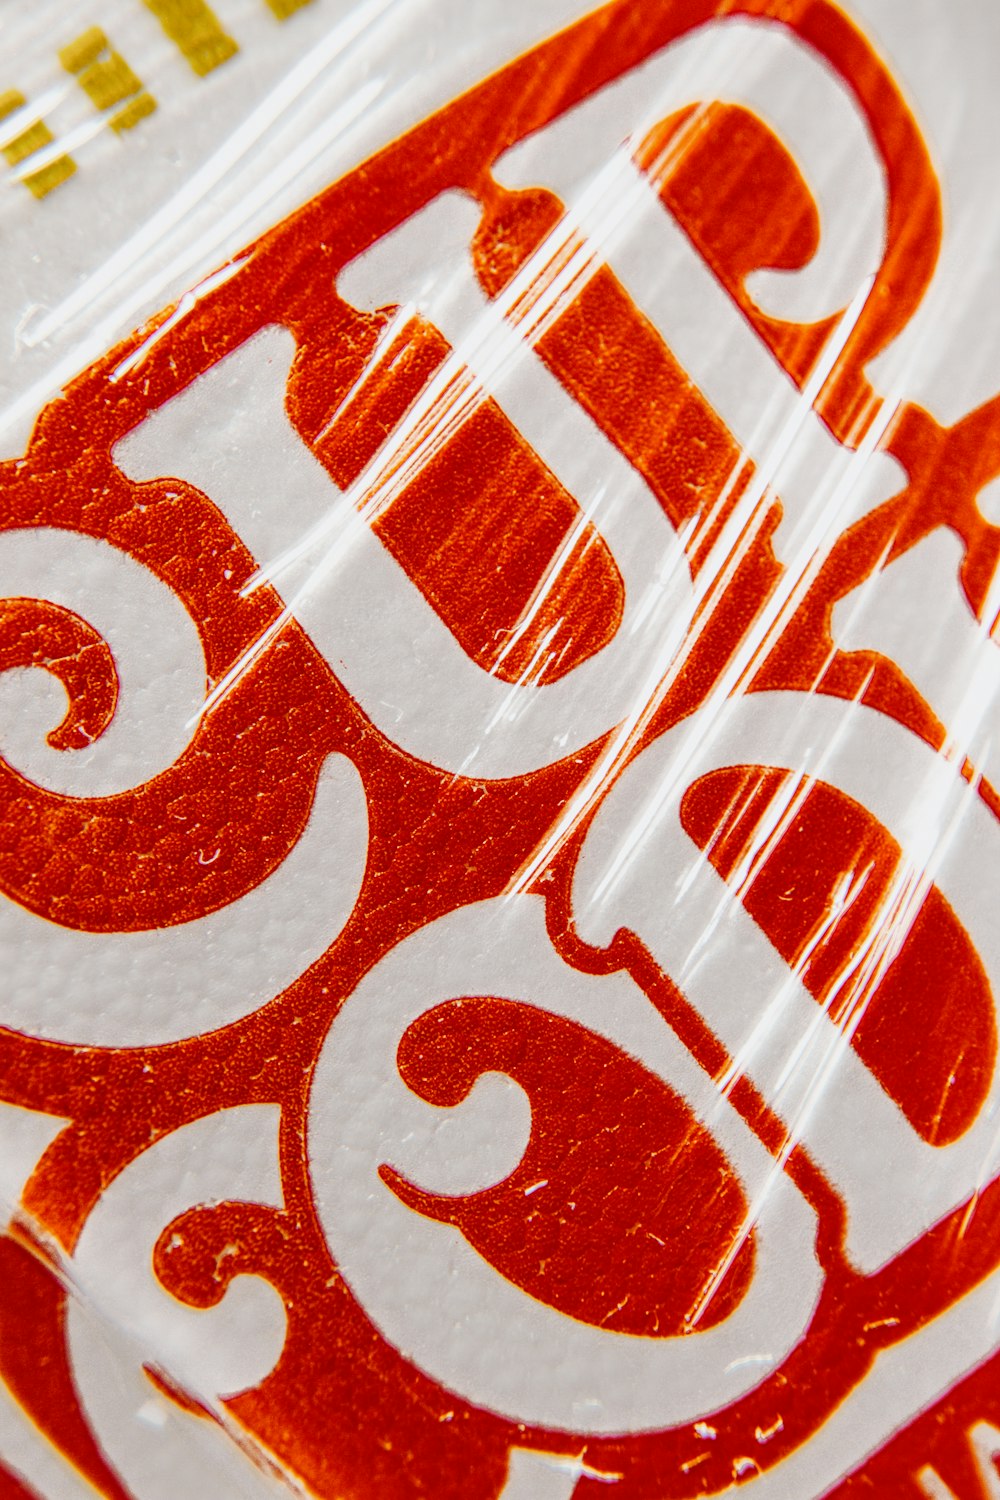 logotipo da coca-cola vermelha e branca